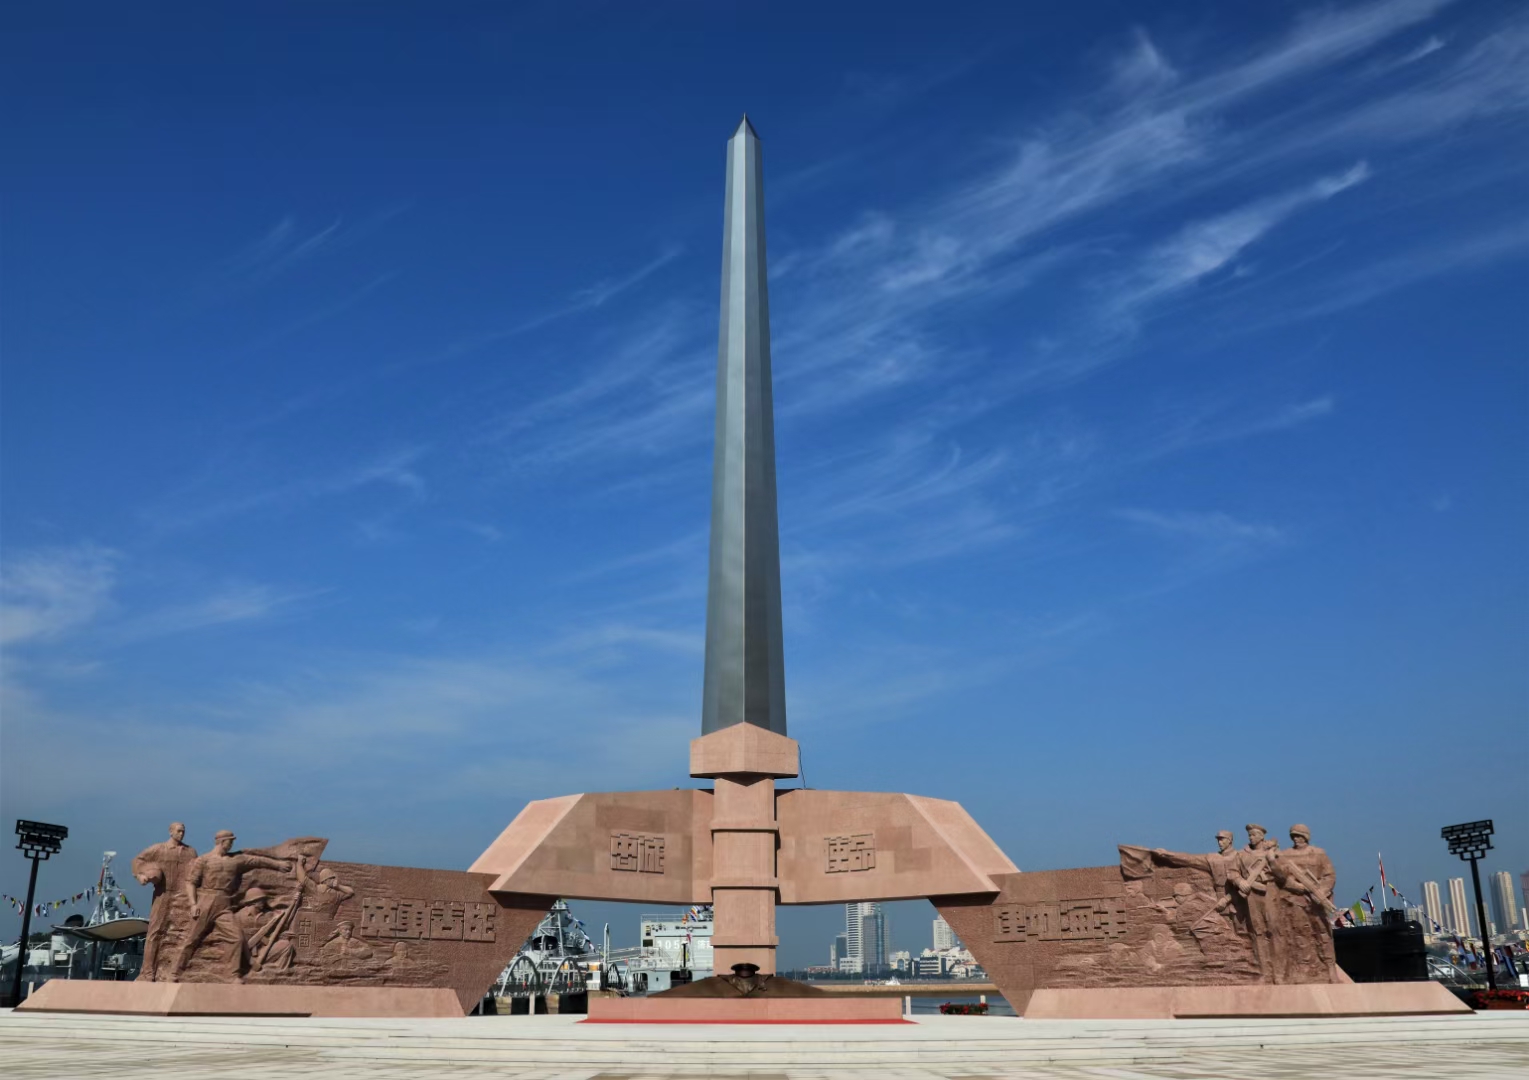 领略军人风采，大型红军雕塑，学军人之精髓_文化广场